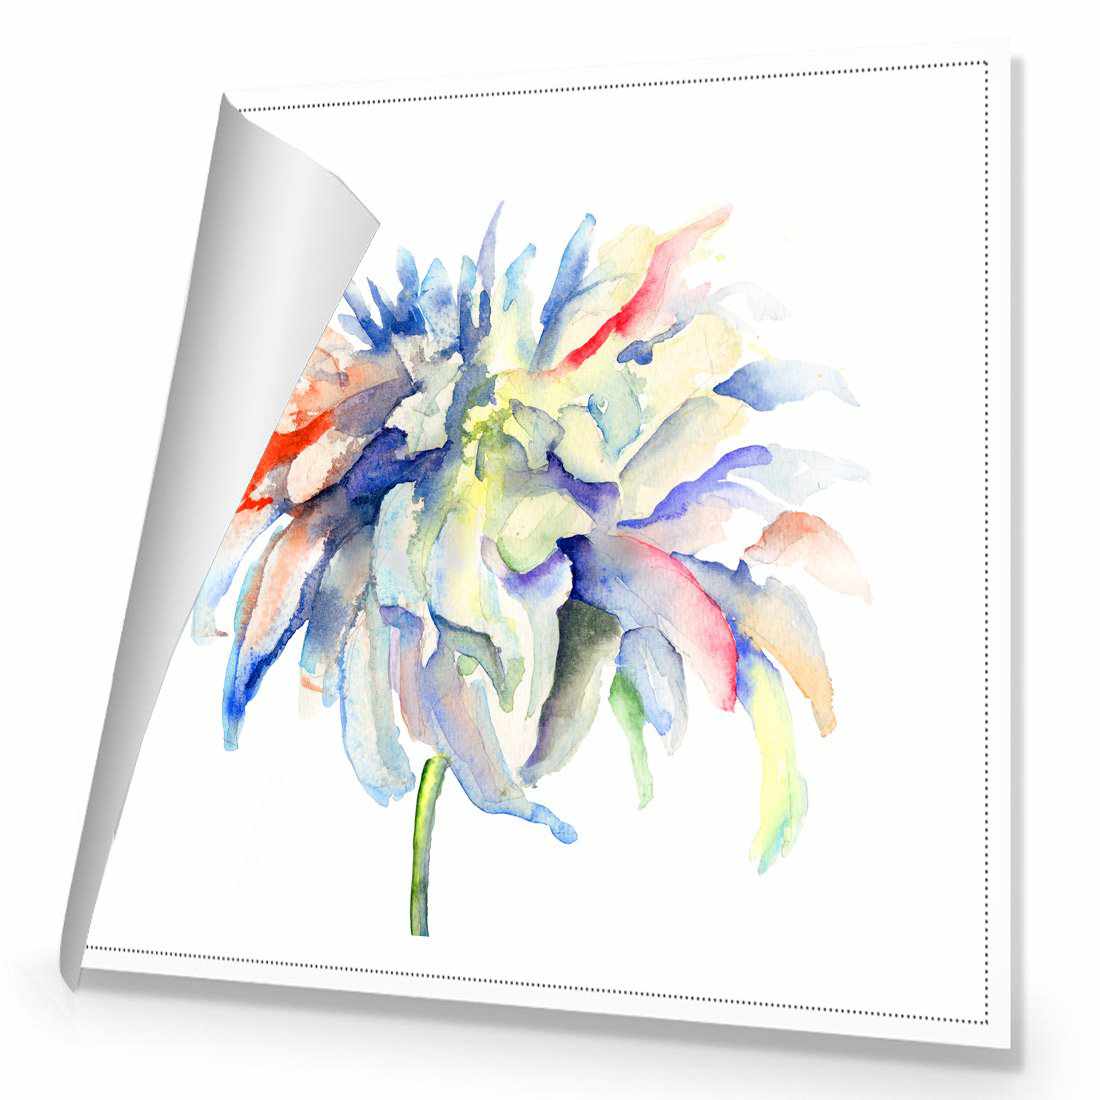 Fairy Floss Canvas Art-Canvas-Wall Art Designs-30x30cm-Rolled Canvas-Wall Art Designs